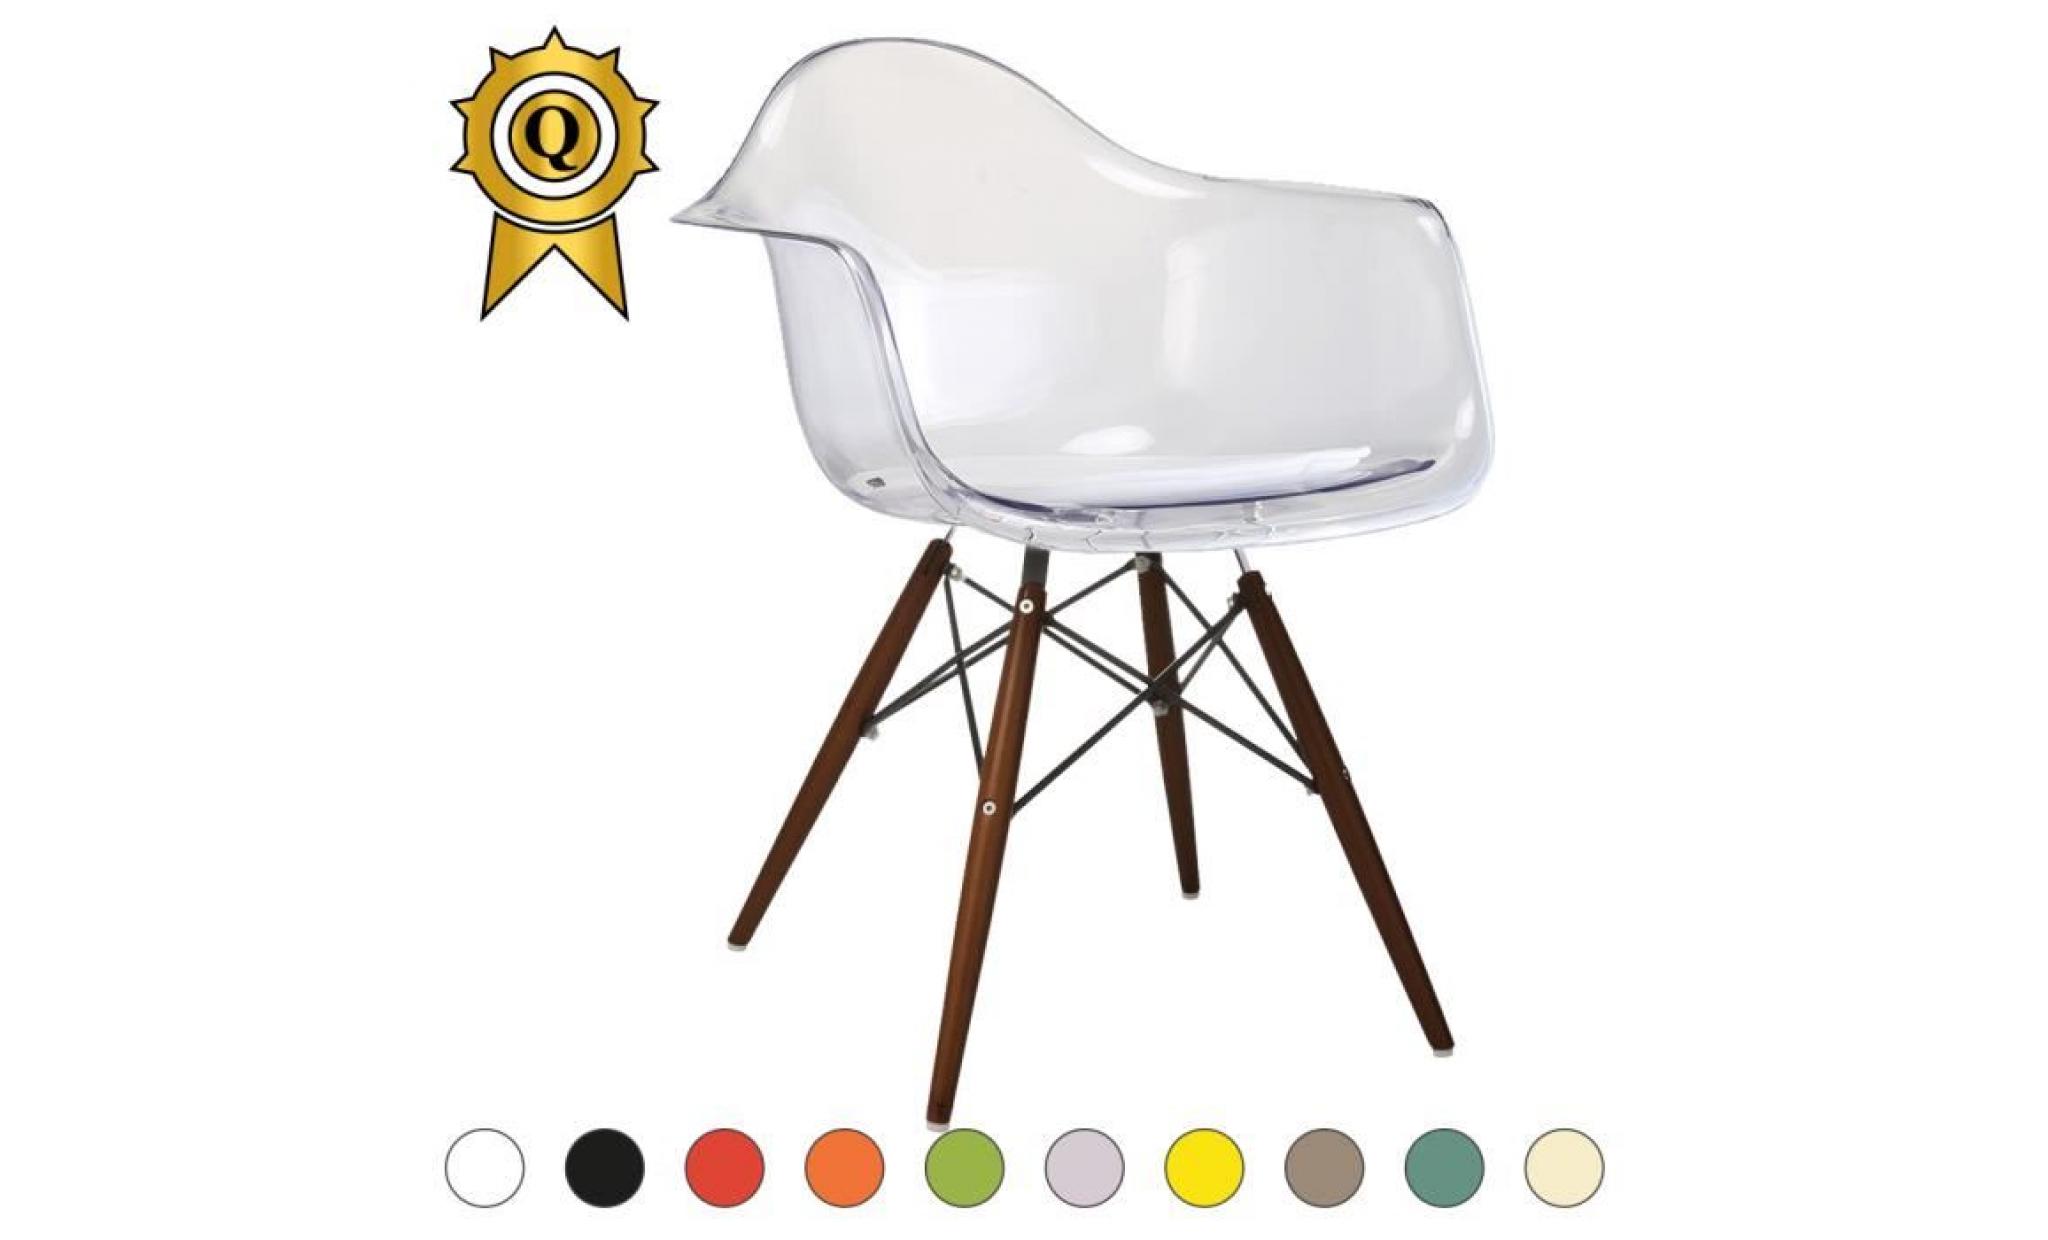 1 x fauteuil design retro style eames daw hauteur 48cm pieds en bois vernis noyer assise orange mobistyl®